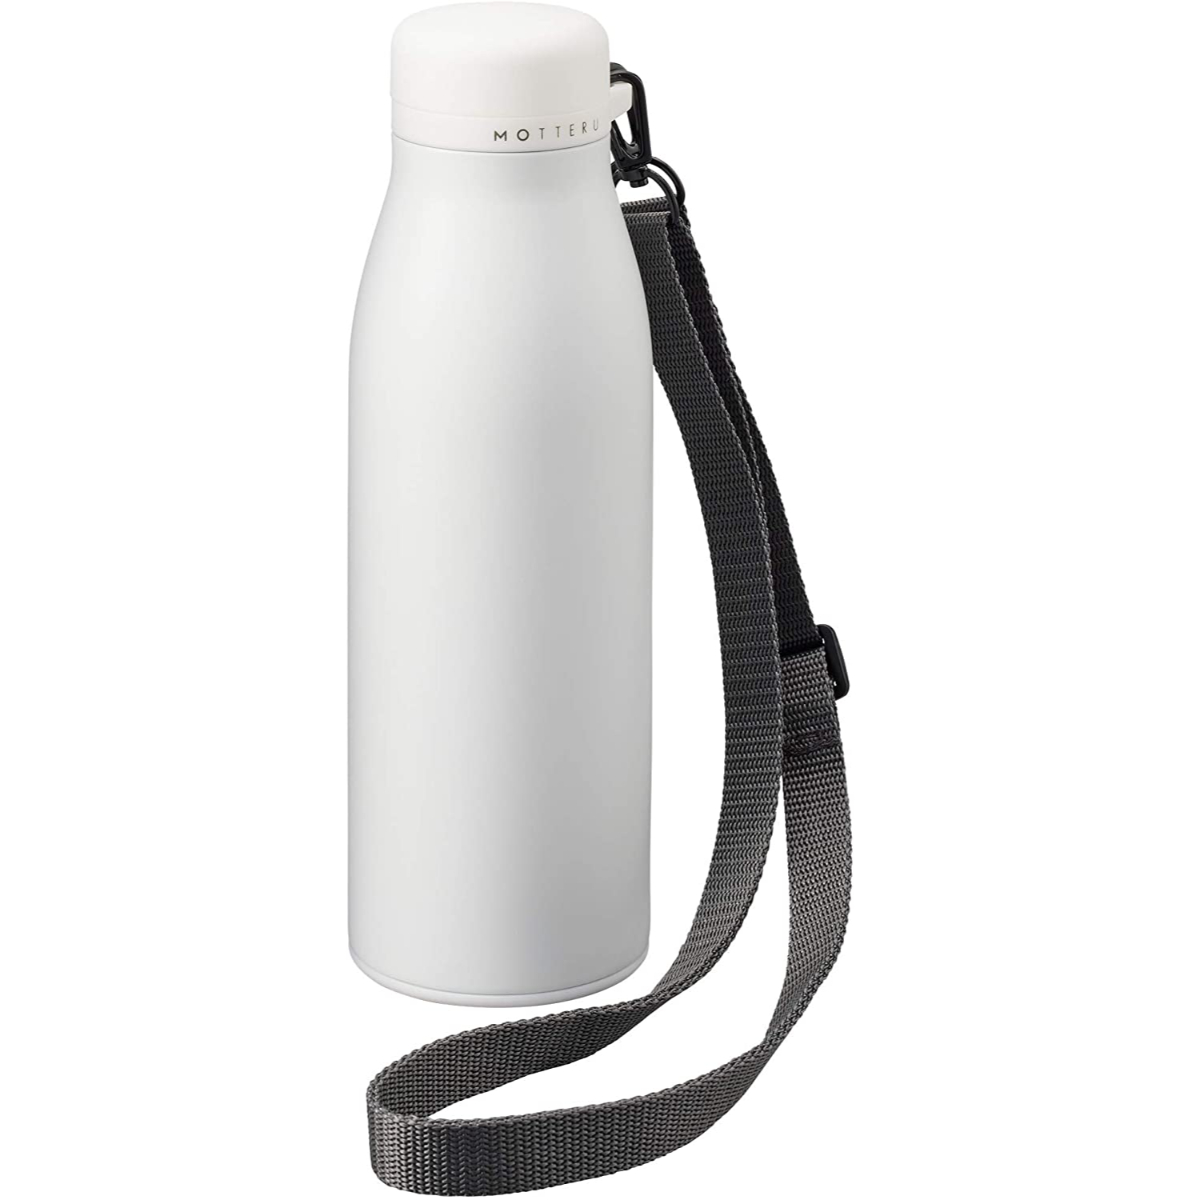 MOTTERU ショルダーサーモステンレスボトル 500ml ホワイト 水筒 保冷 保温 真空断熱 直飲み スクリュー式 ショルダー付き